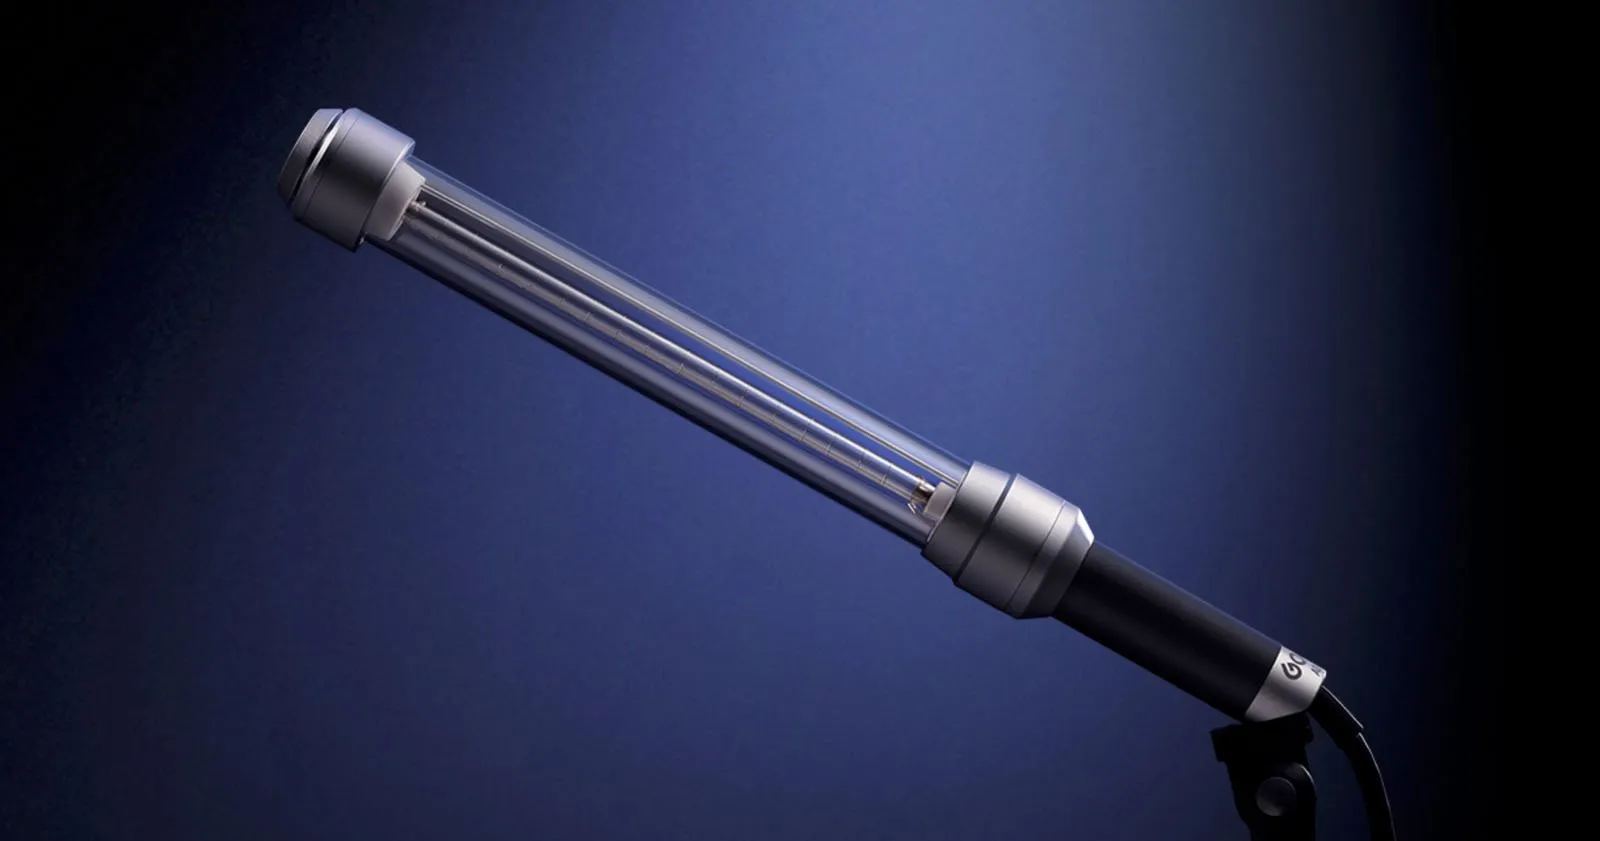 Godox ra mắt đèn flash Godox AD-S200 mới với khả năng toả sáng 360 độ